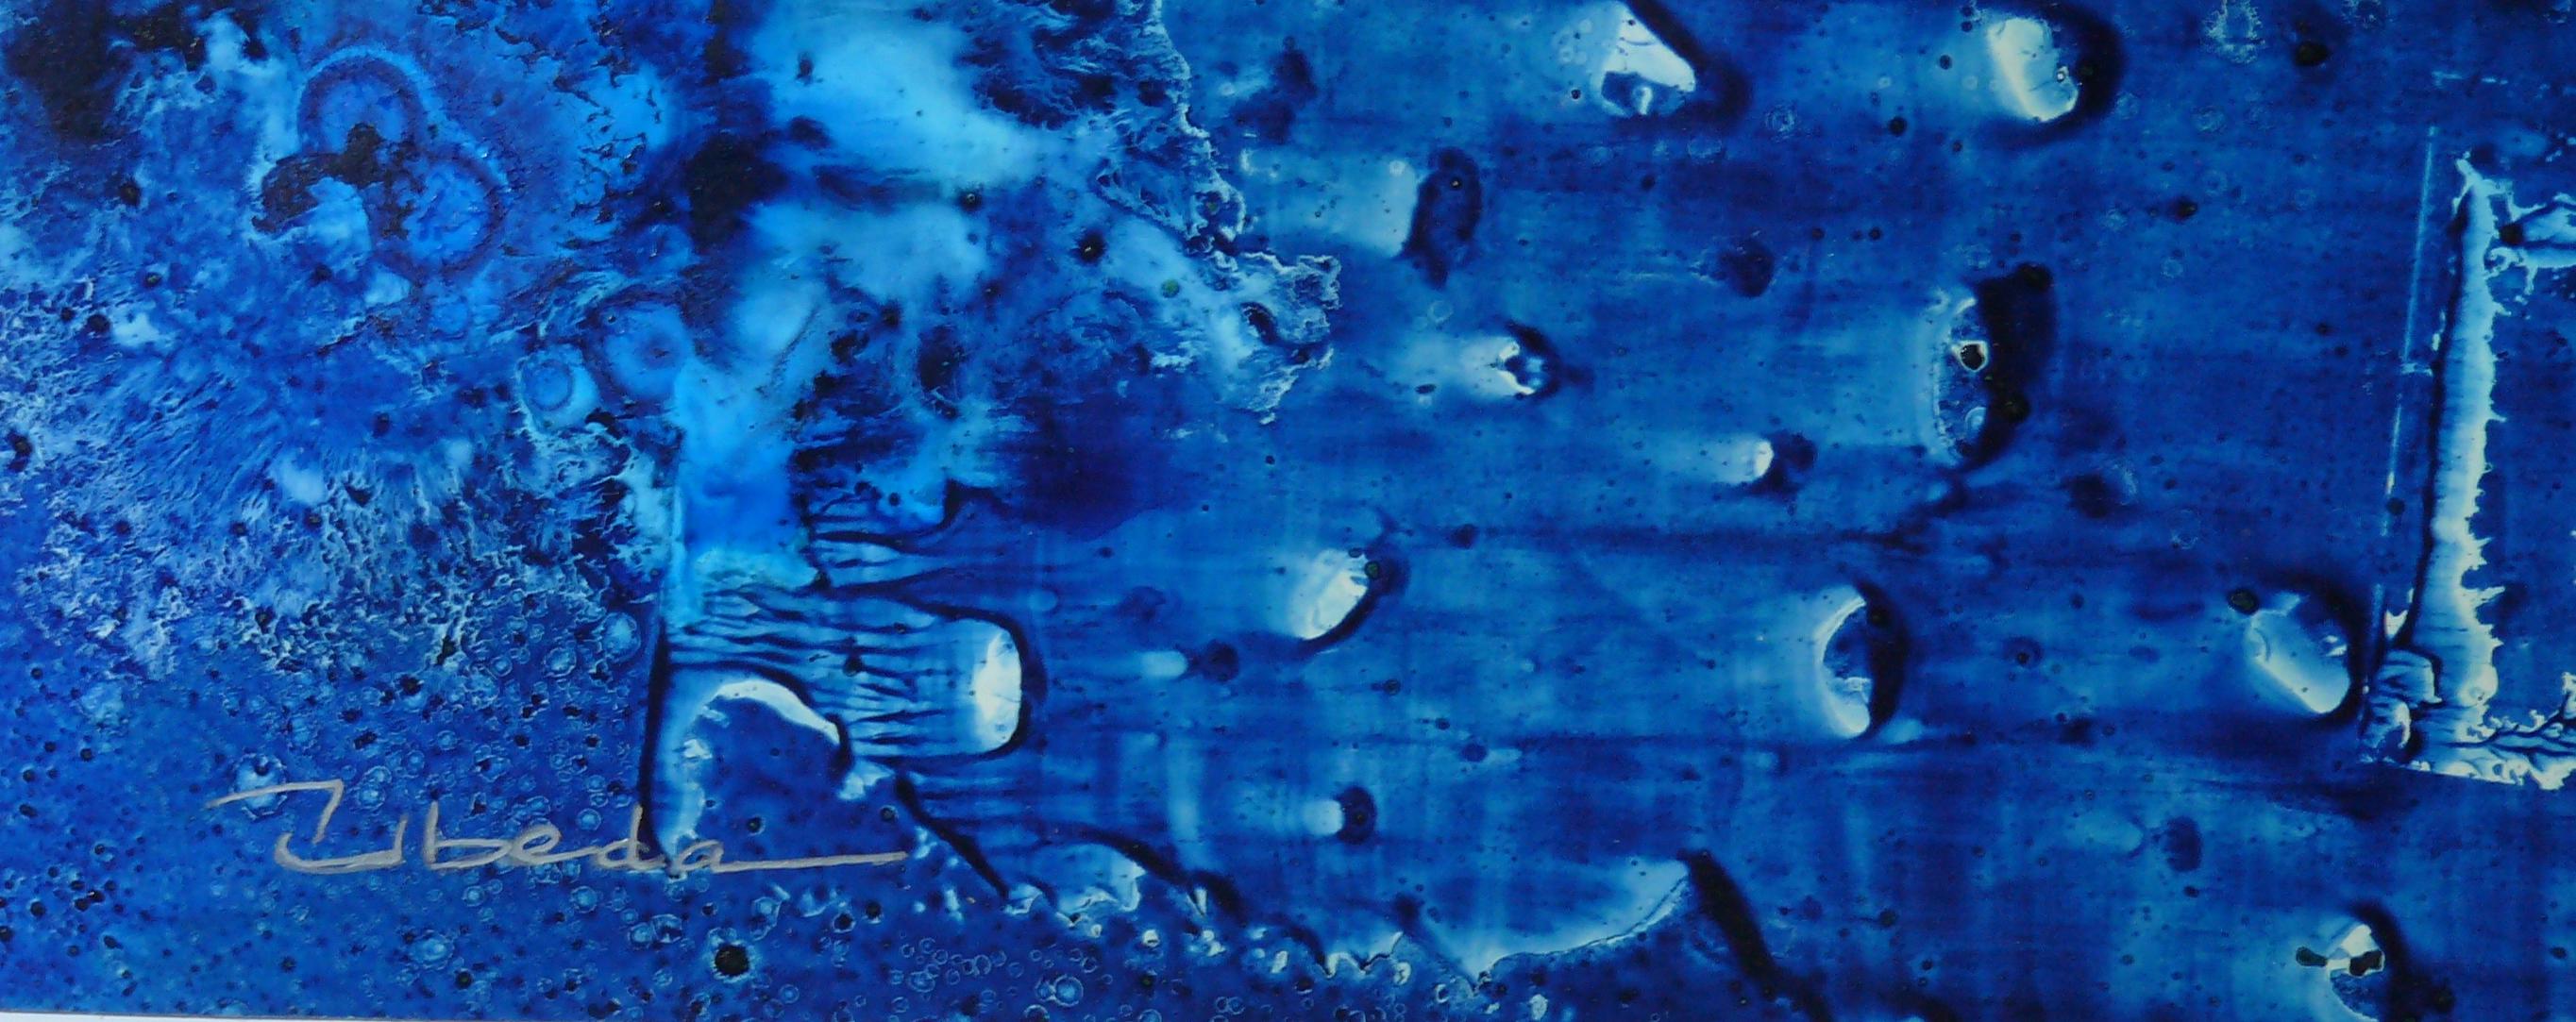 Série Under The Sea Nº 13. Úbeda. Paysage sous-marin fantastique à l'huile. - Painting de Ángel Luis Úbeda